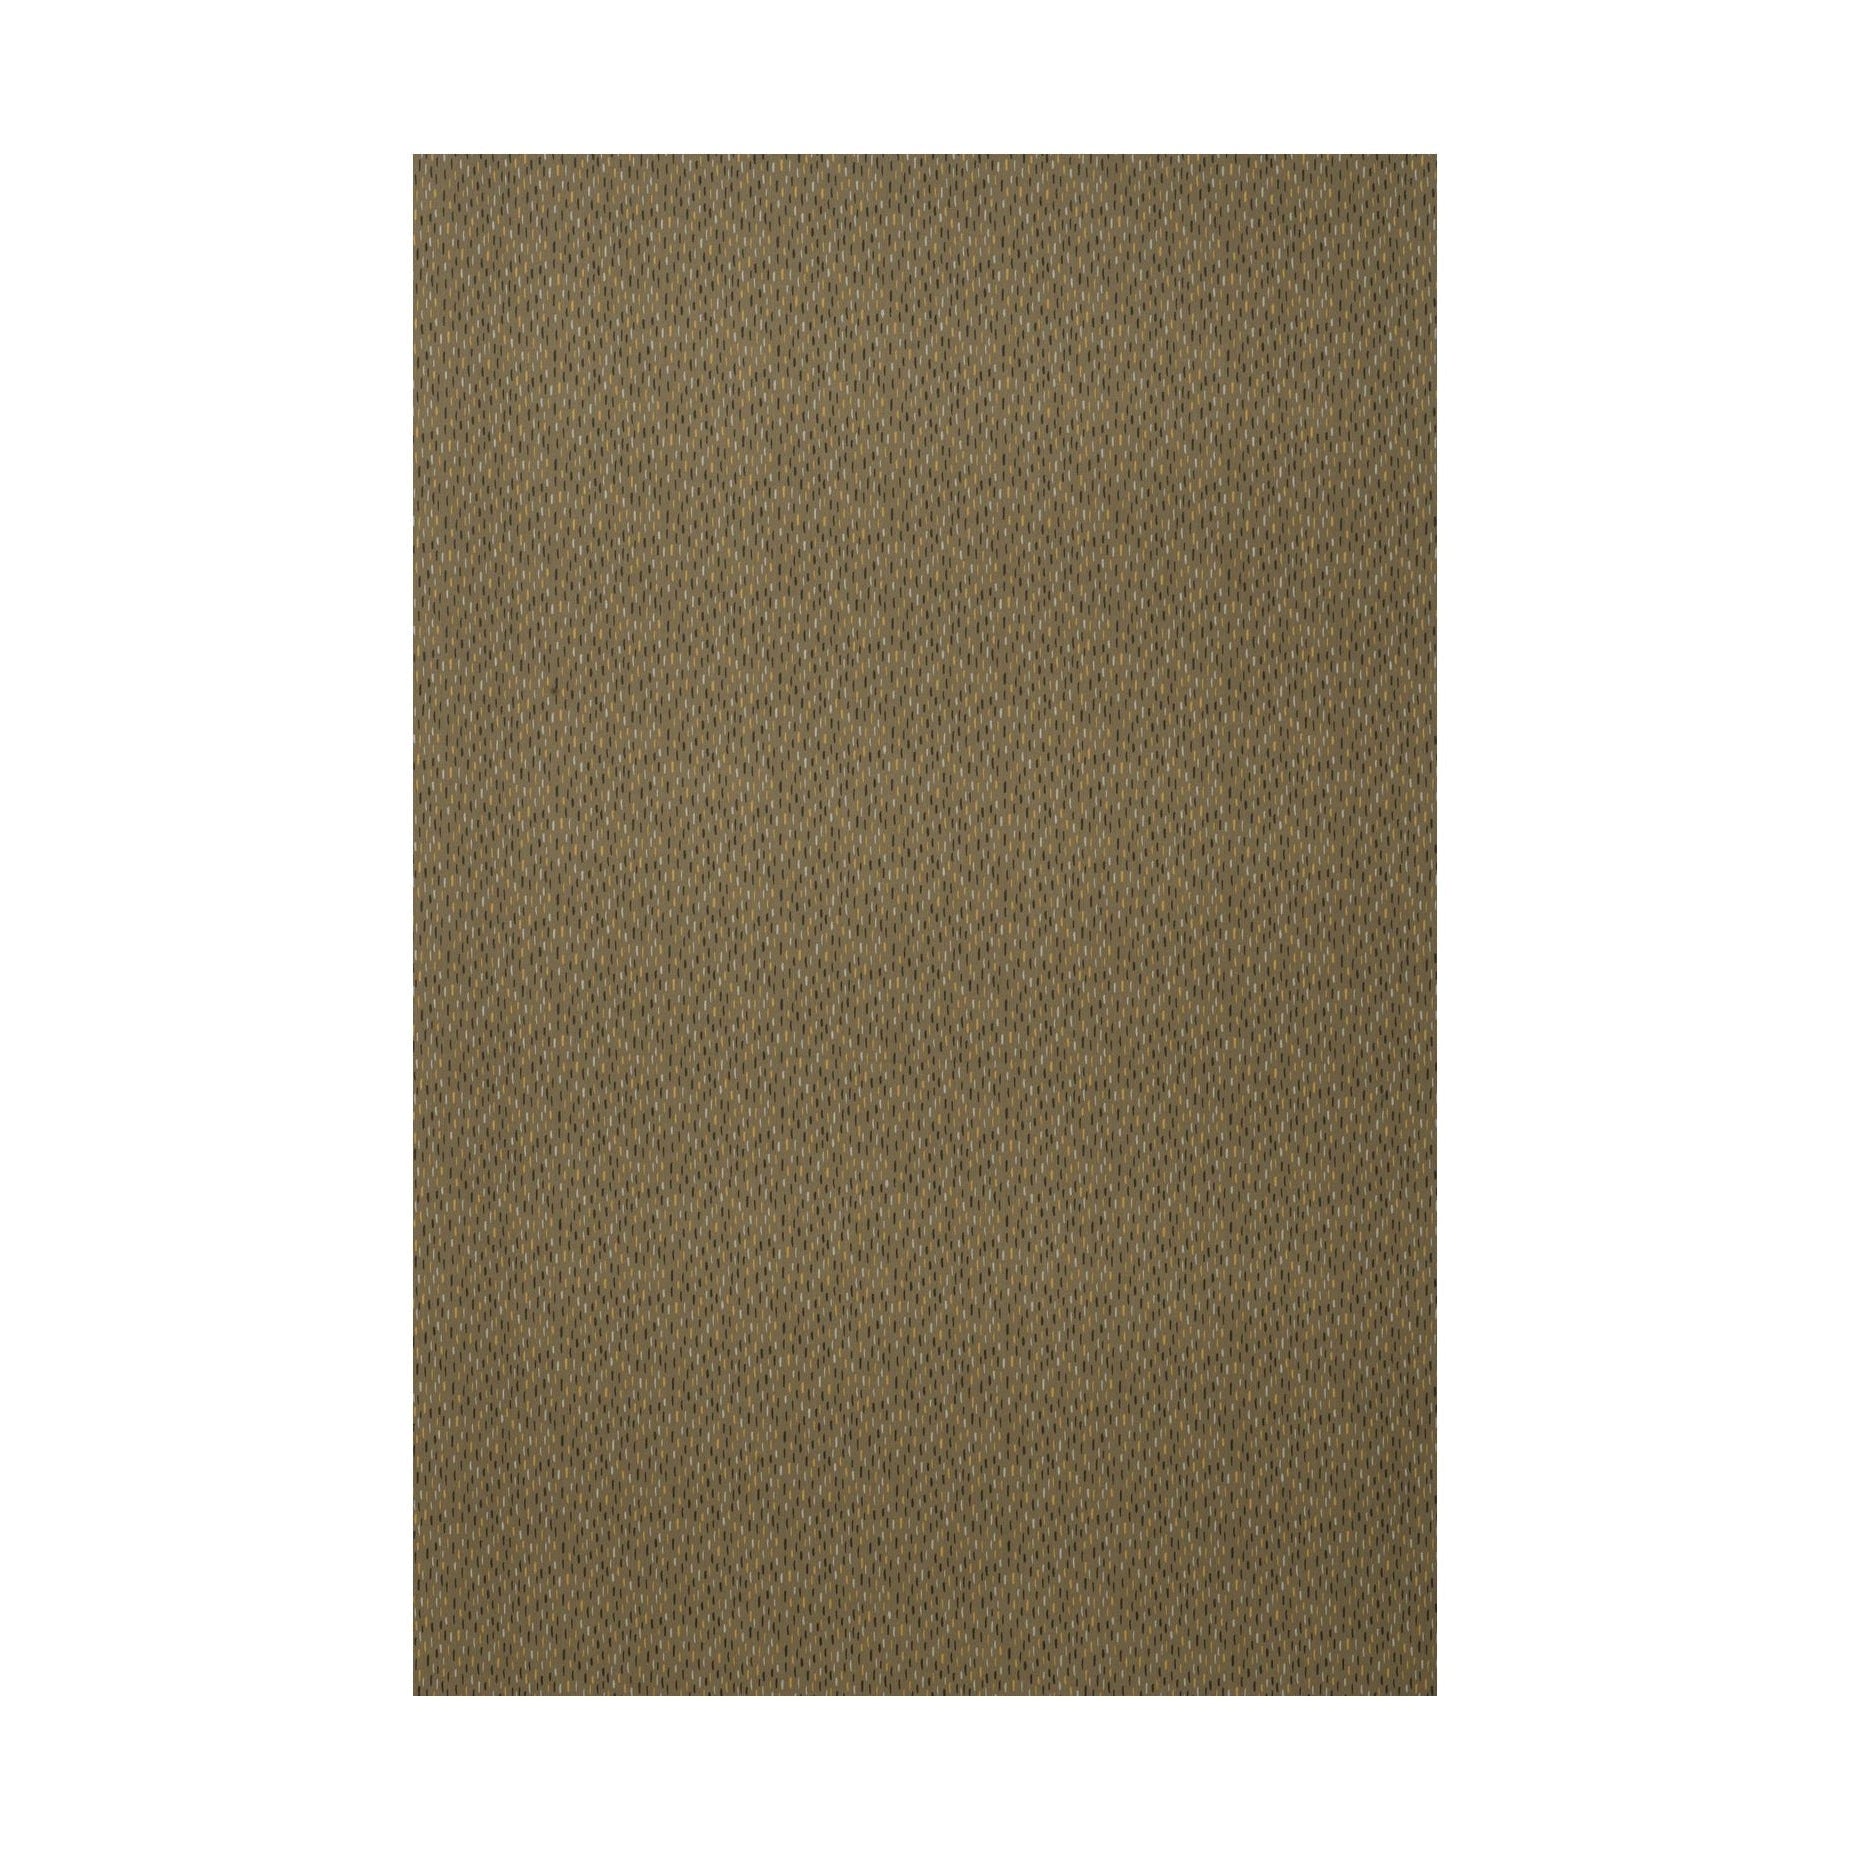 Spira Art Fabric Ancho de 150 cm (precio por metro), marrón